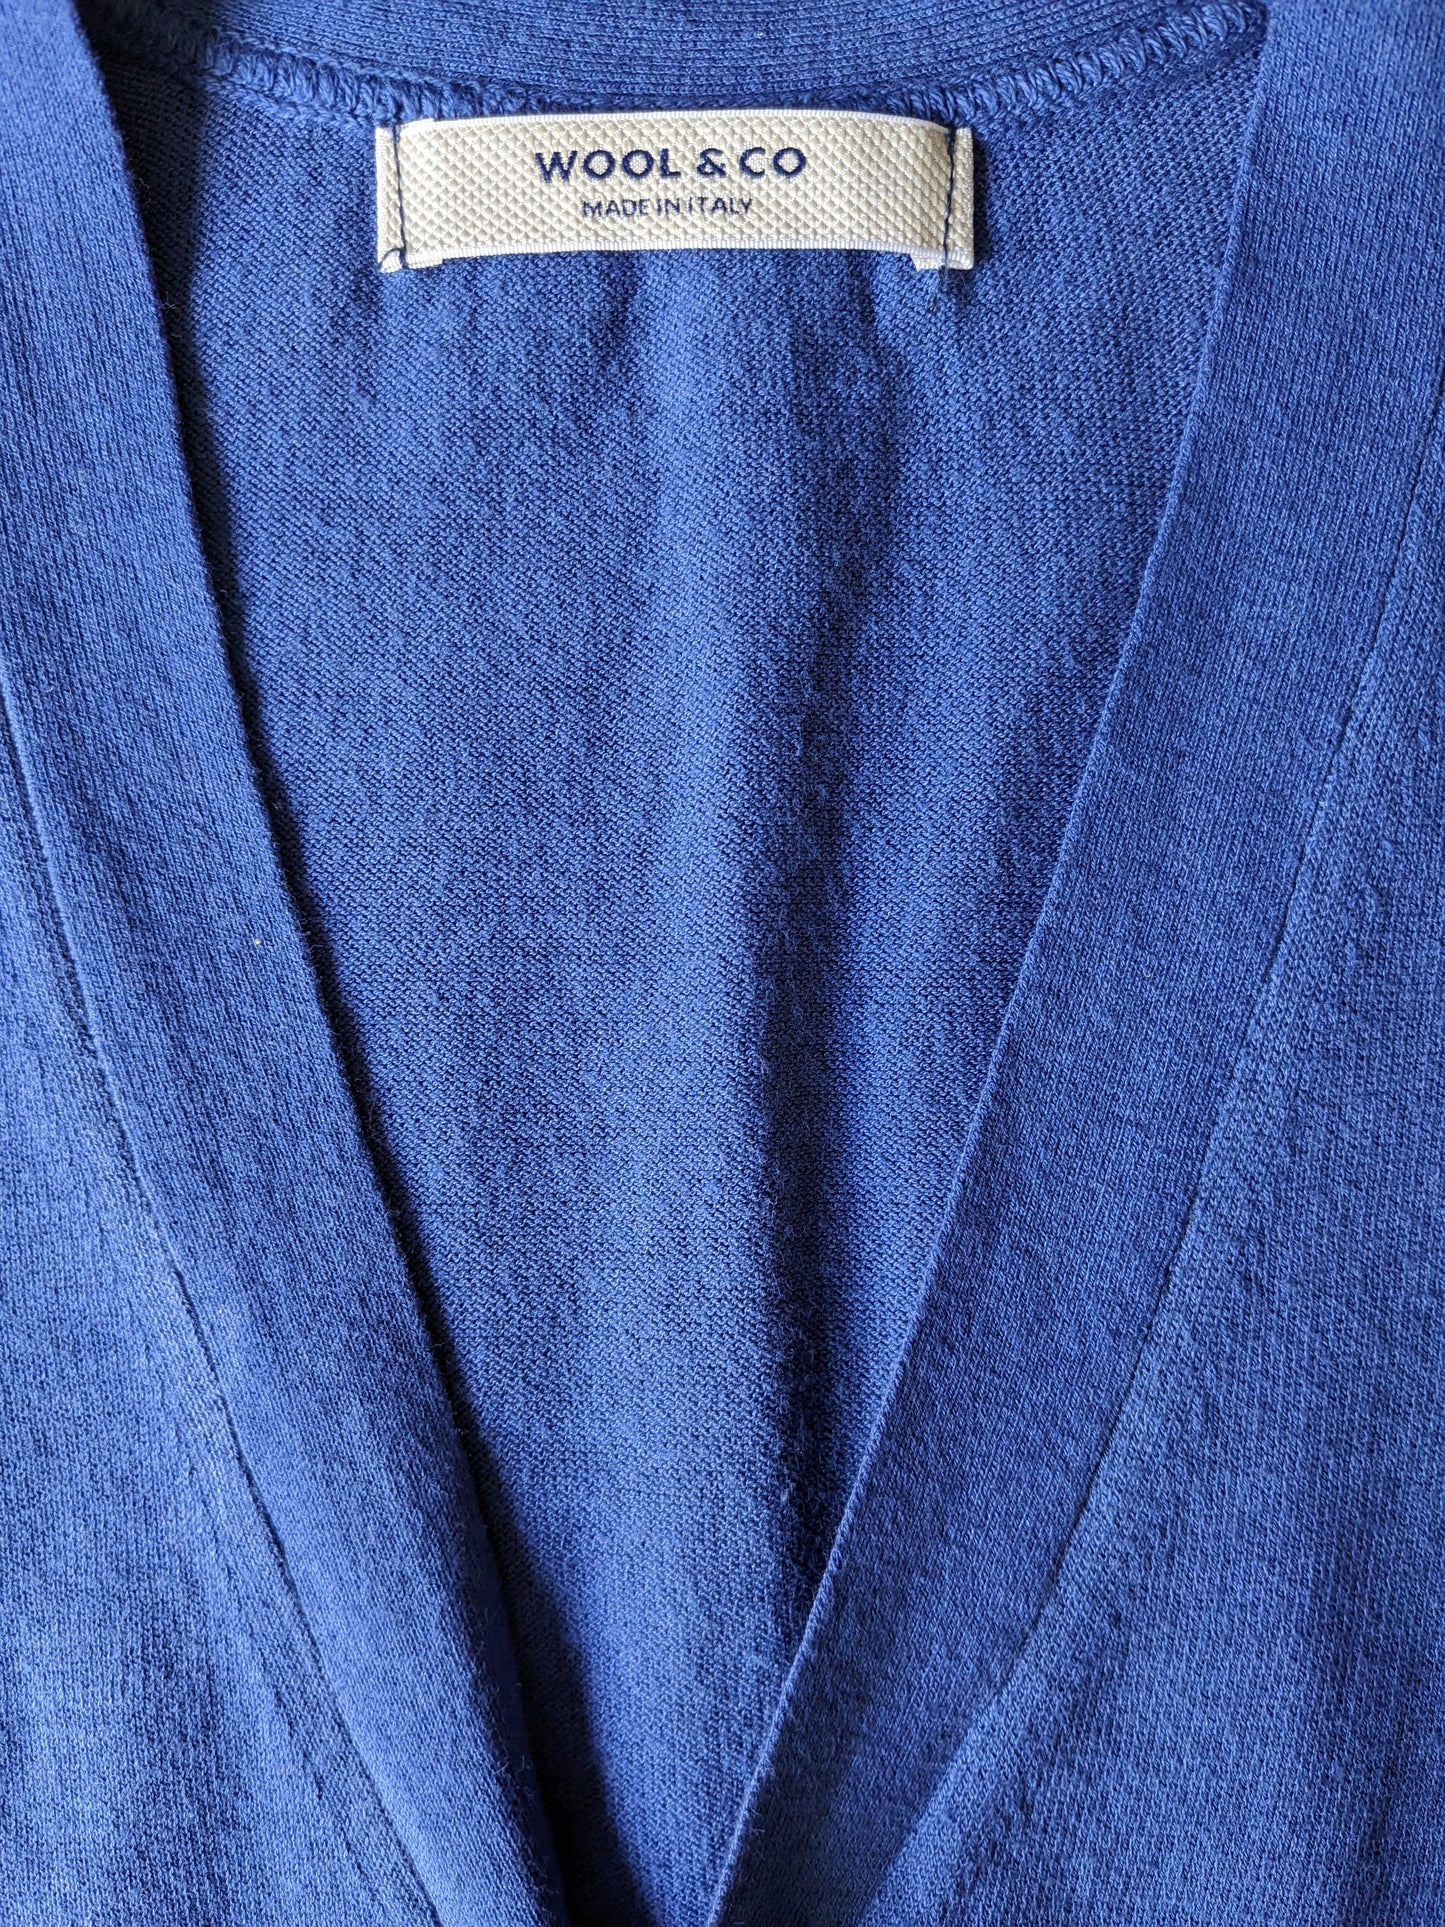 Wool & Co Cotton Whitcoat. Colorato blu. Taglia S.